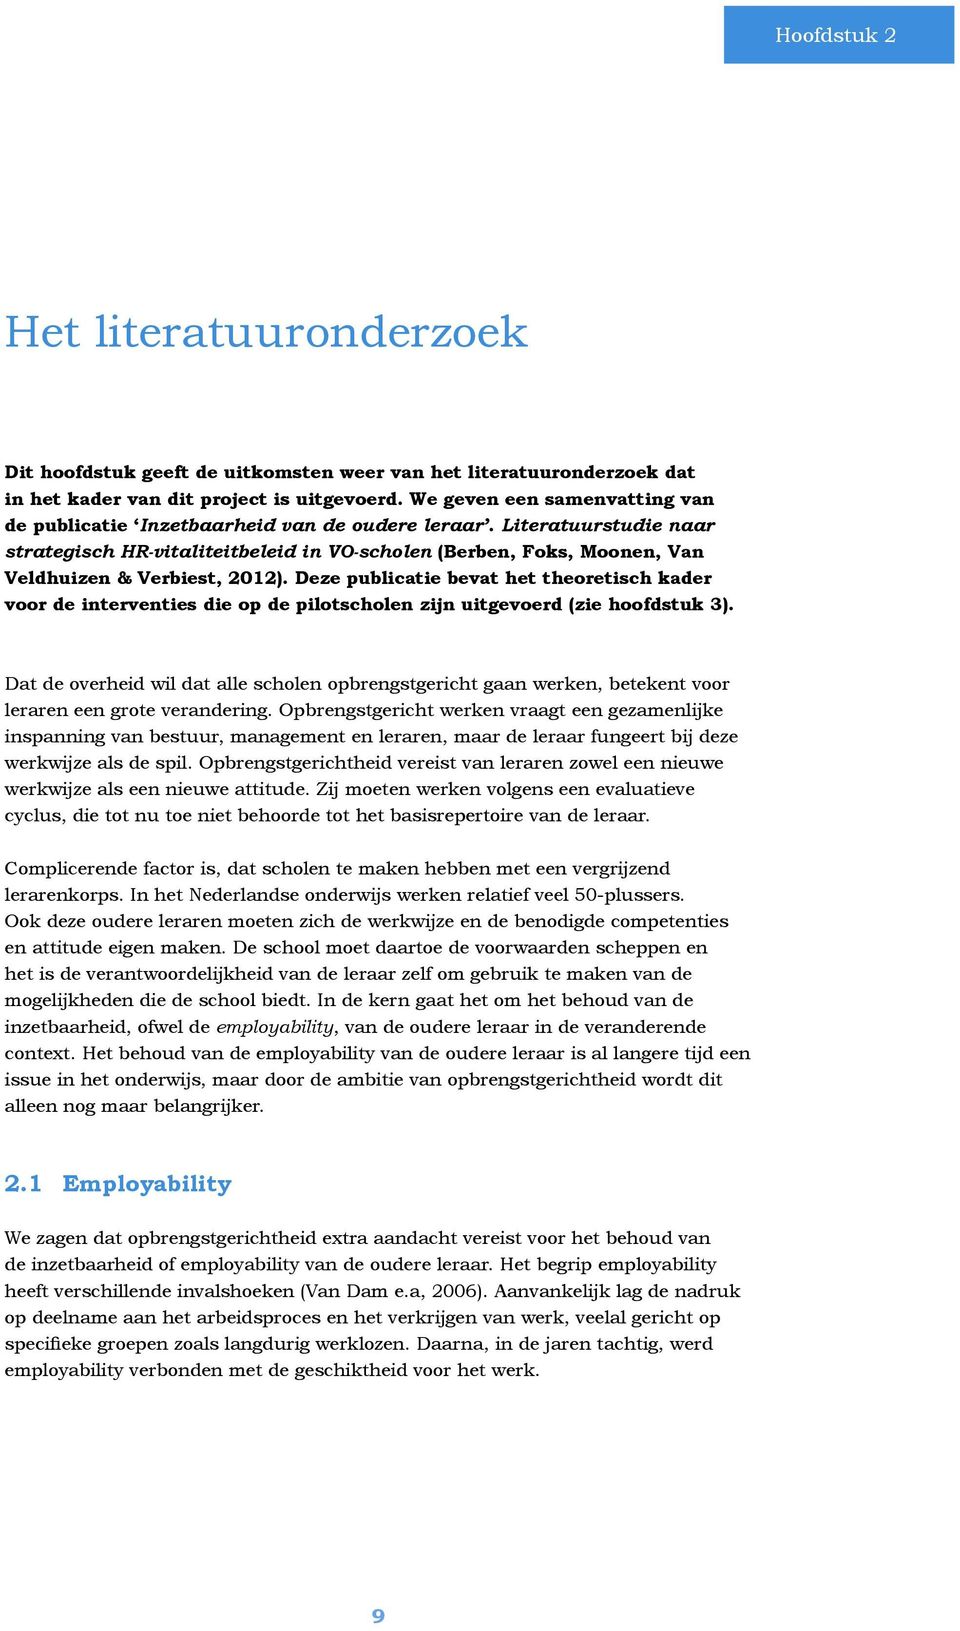 Literatuurstudie naar strategisch HR-vitaliteitbeleid in VO-scholen (Berben, Foks, Moonen, Van Veldhuizen & Verbiest, 2012).